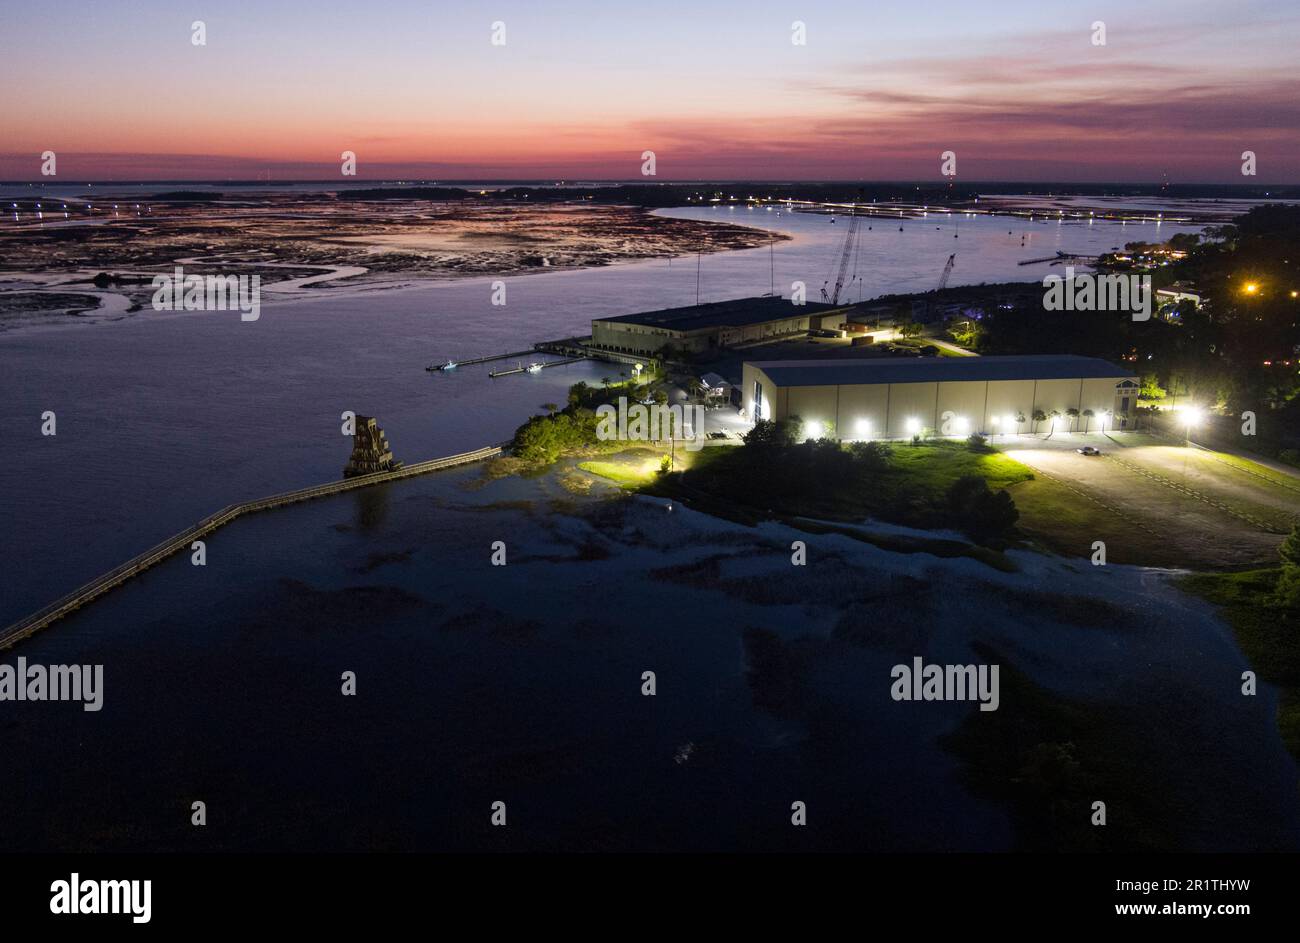 Vista aerea al crepuscolo della zona costiera di Port Royal, South Carolina con zona industriale. Foto Stock